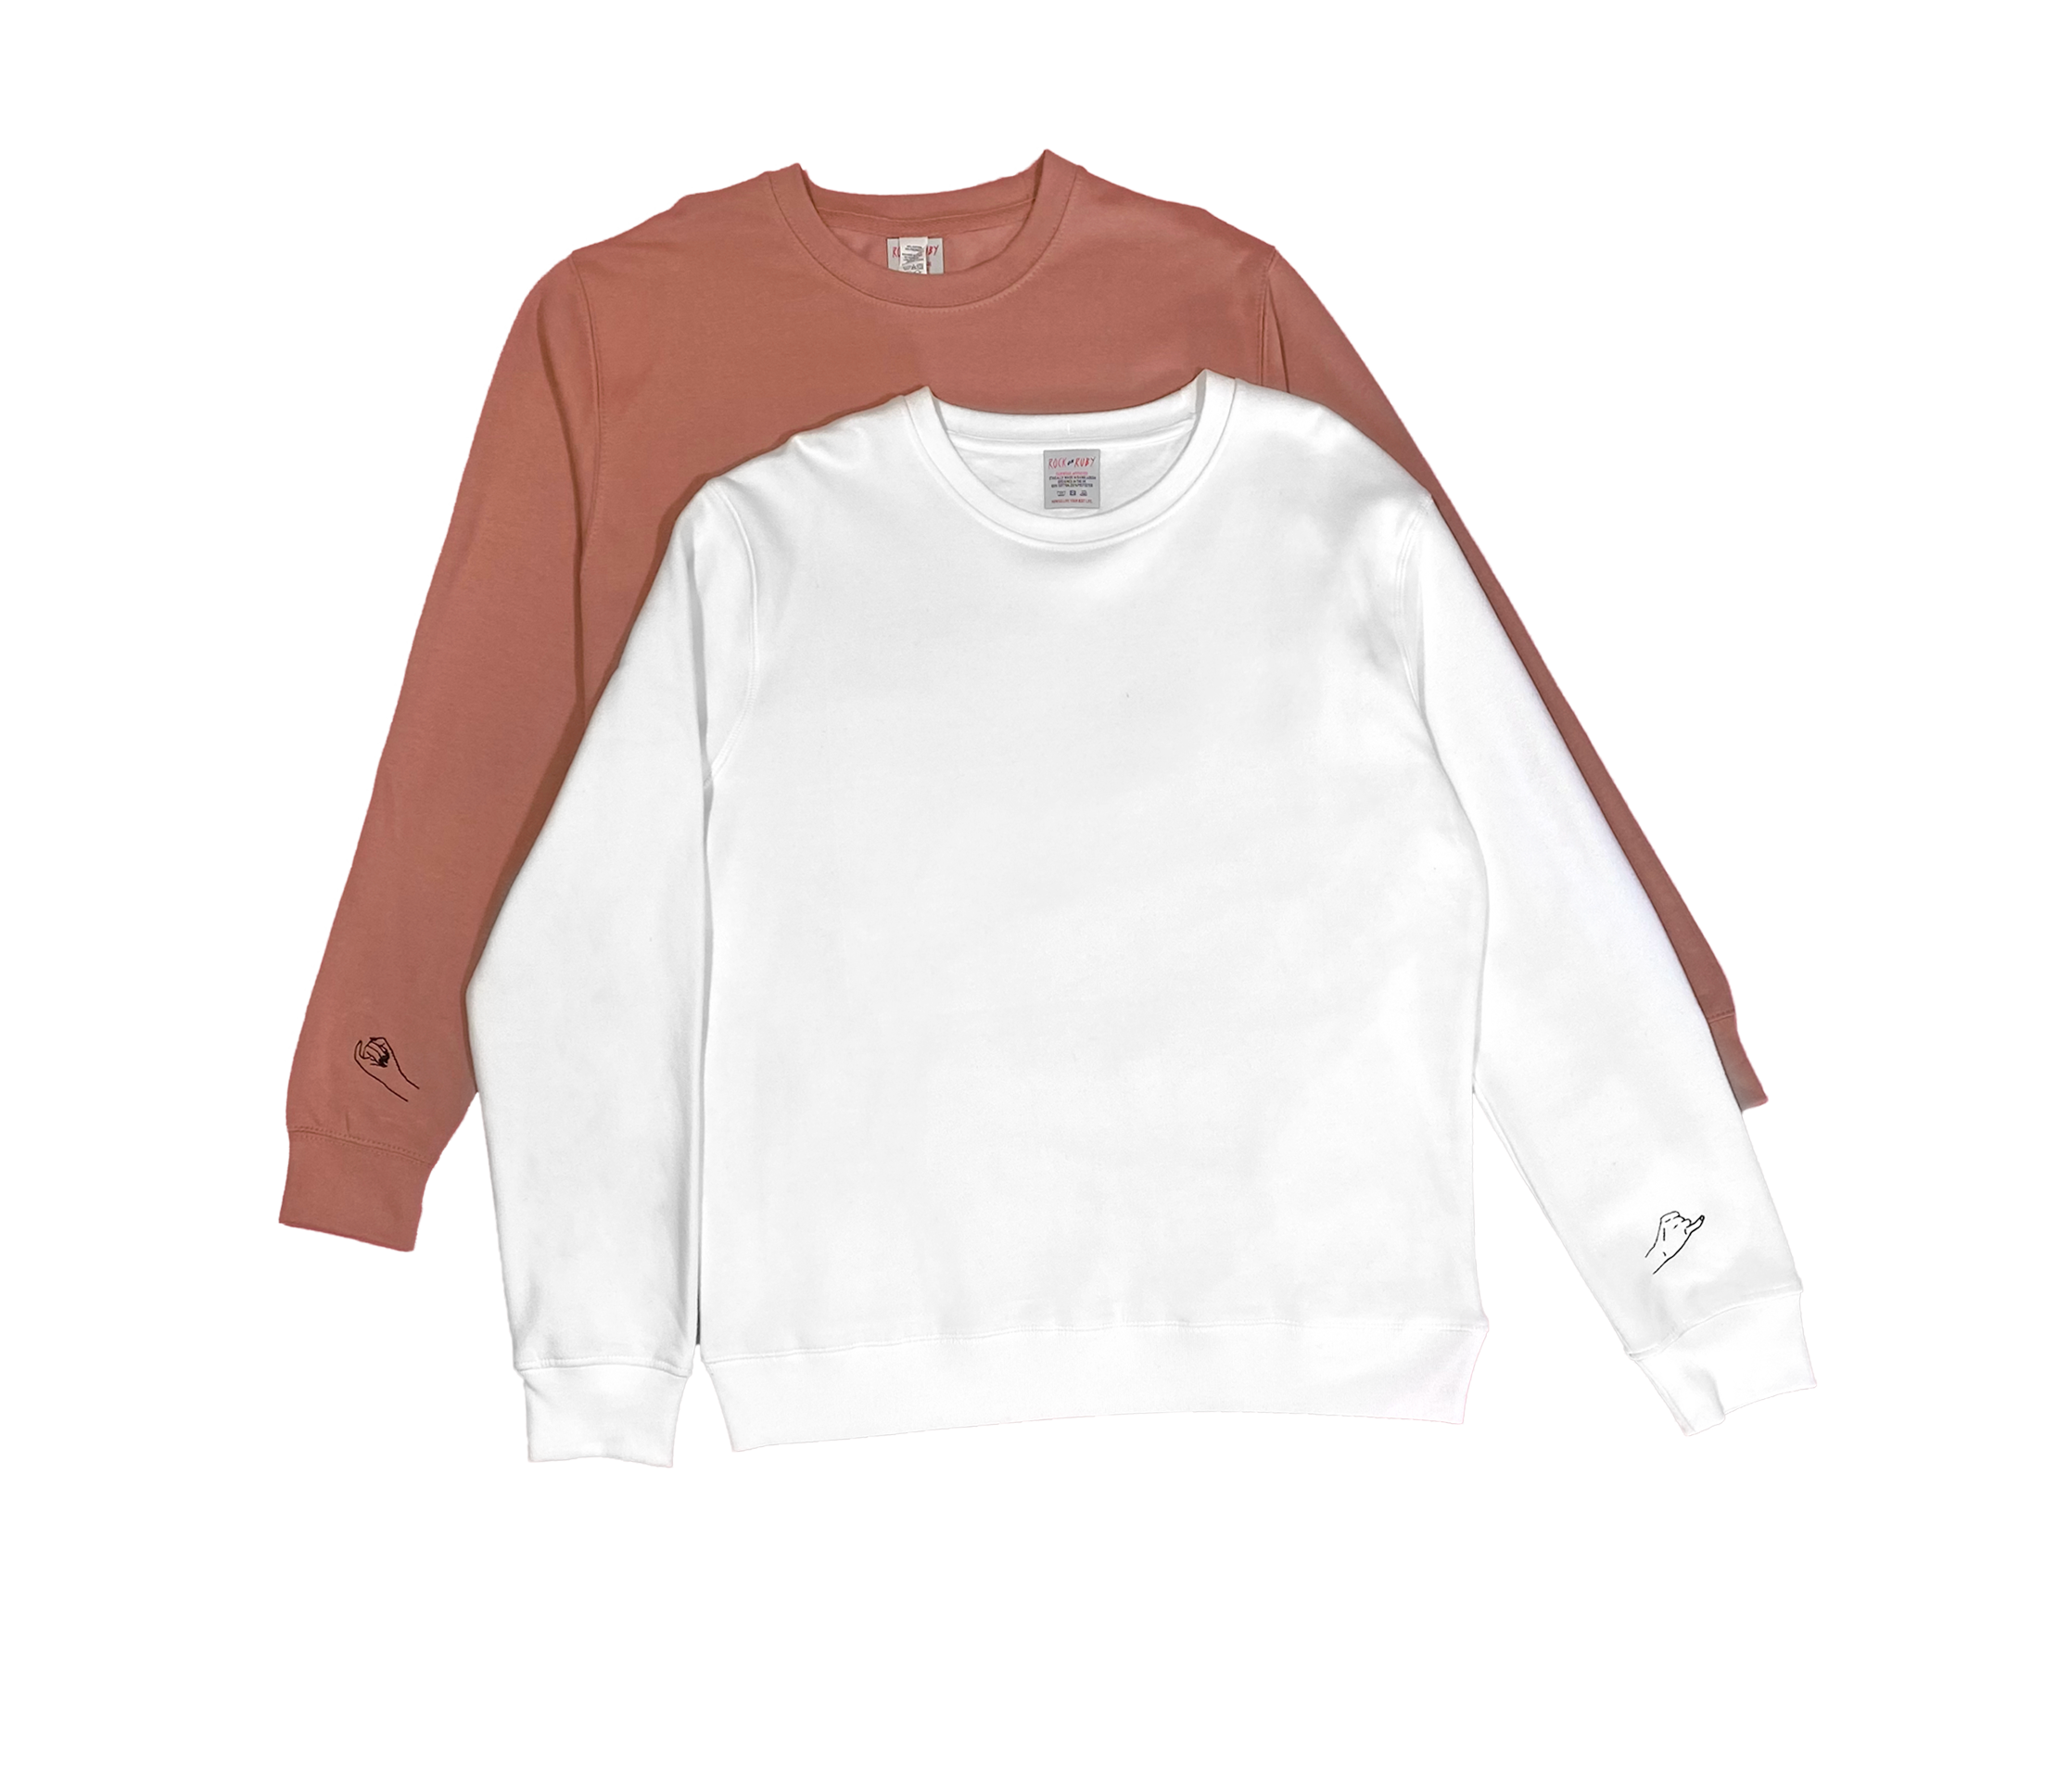 pinky promise sweatshirt set